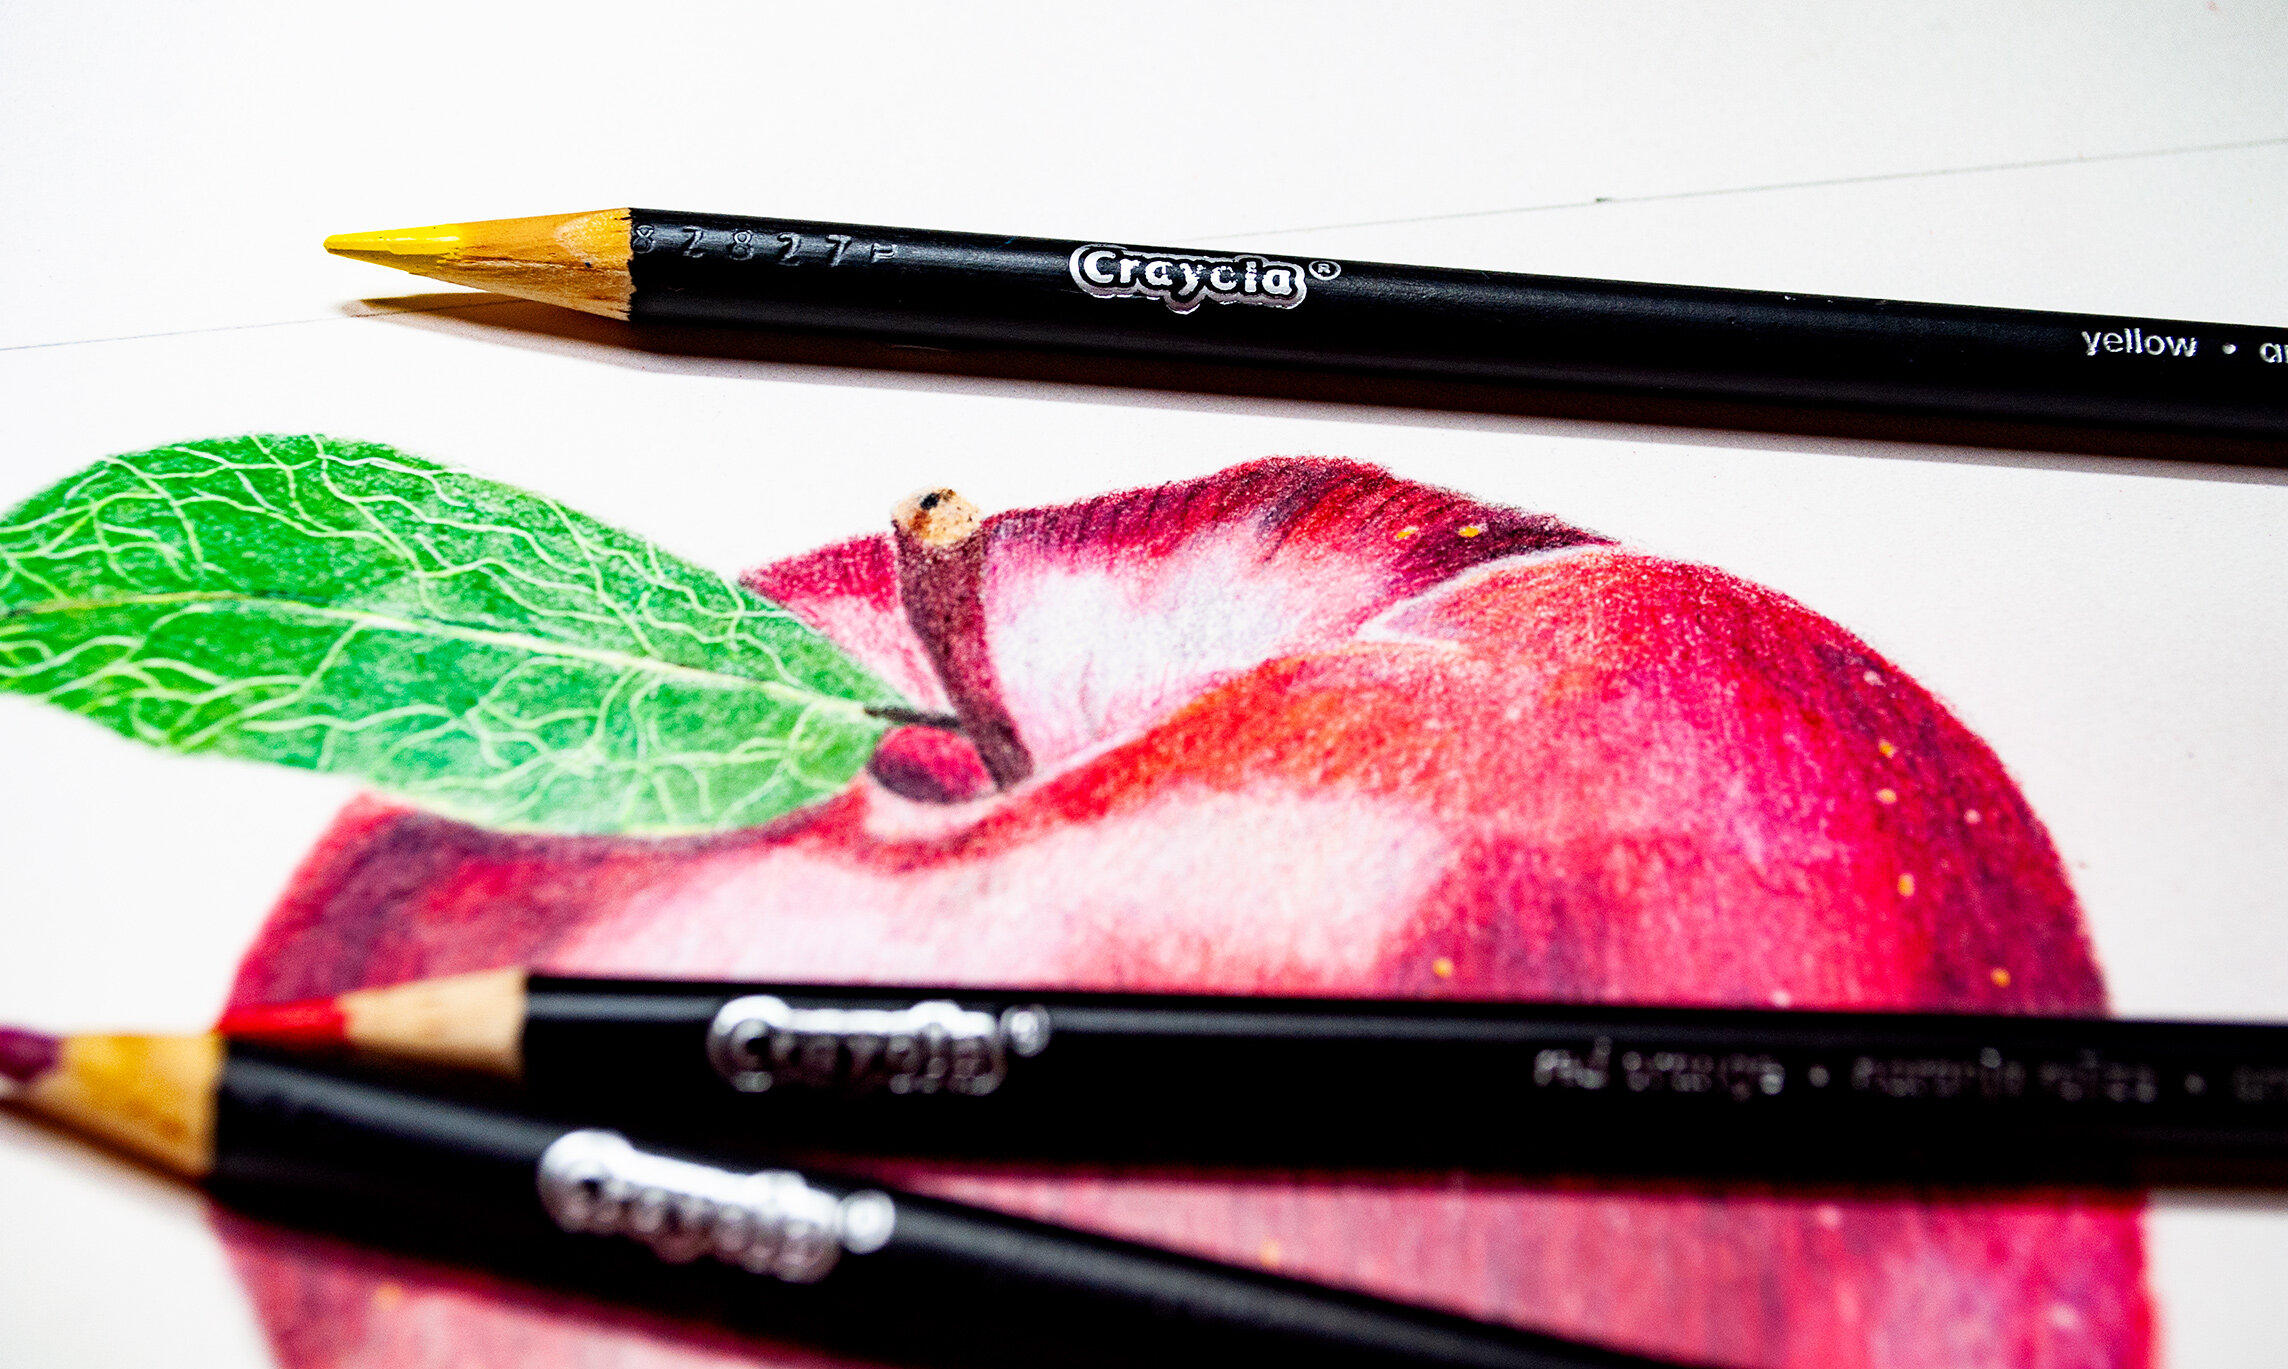 Review – Crayola Erasable Colored Pencils